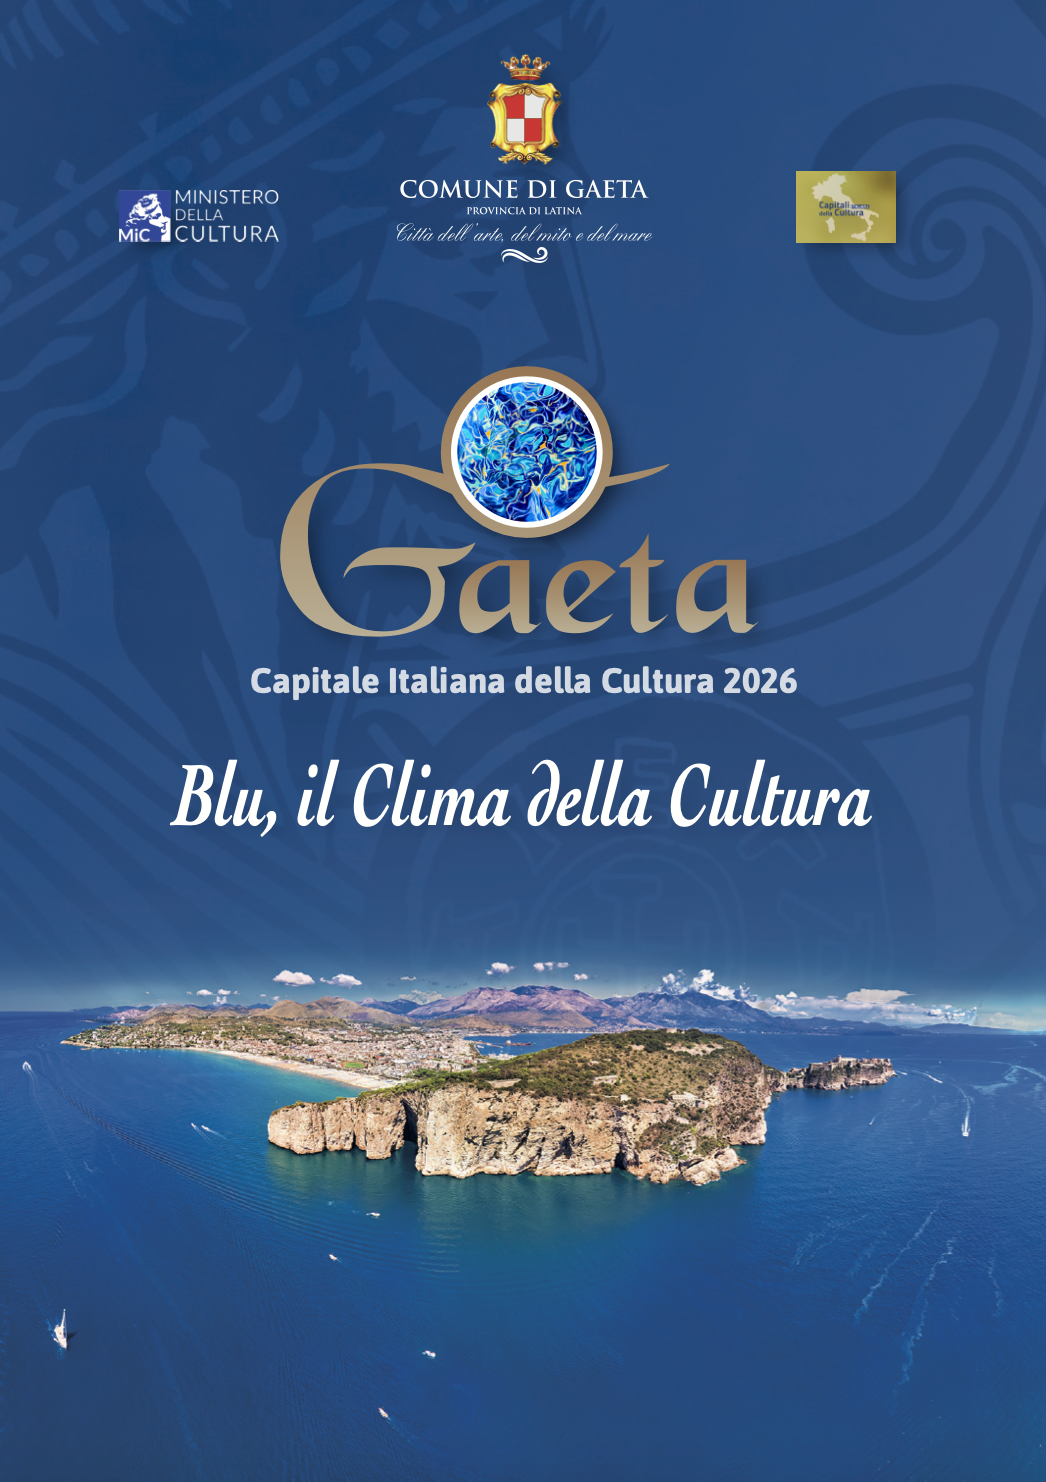 Blu, il Clima della Cultura: un progetto ambizioso alla scoperta dell'ambiente che ci circonda come un "unicum" nell'atlante del Mediterraneo